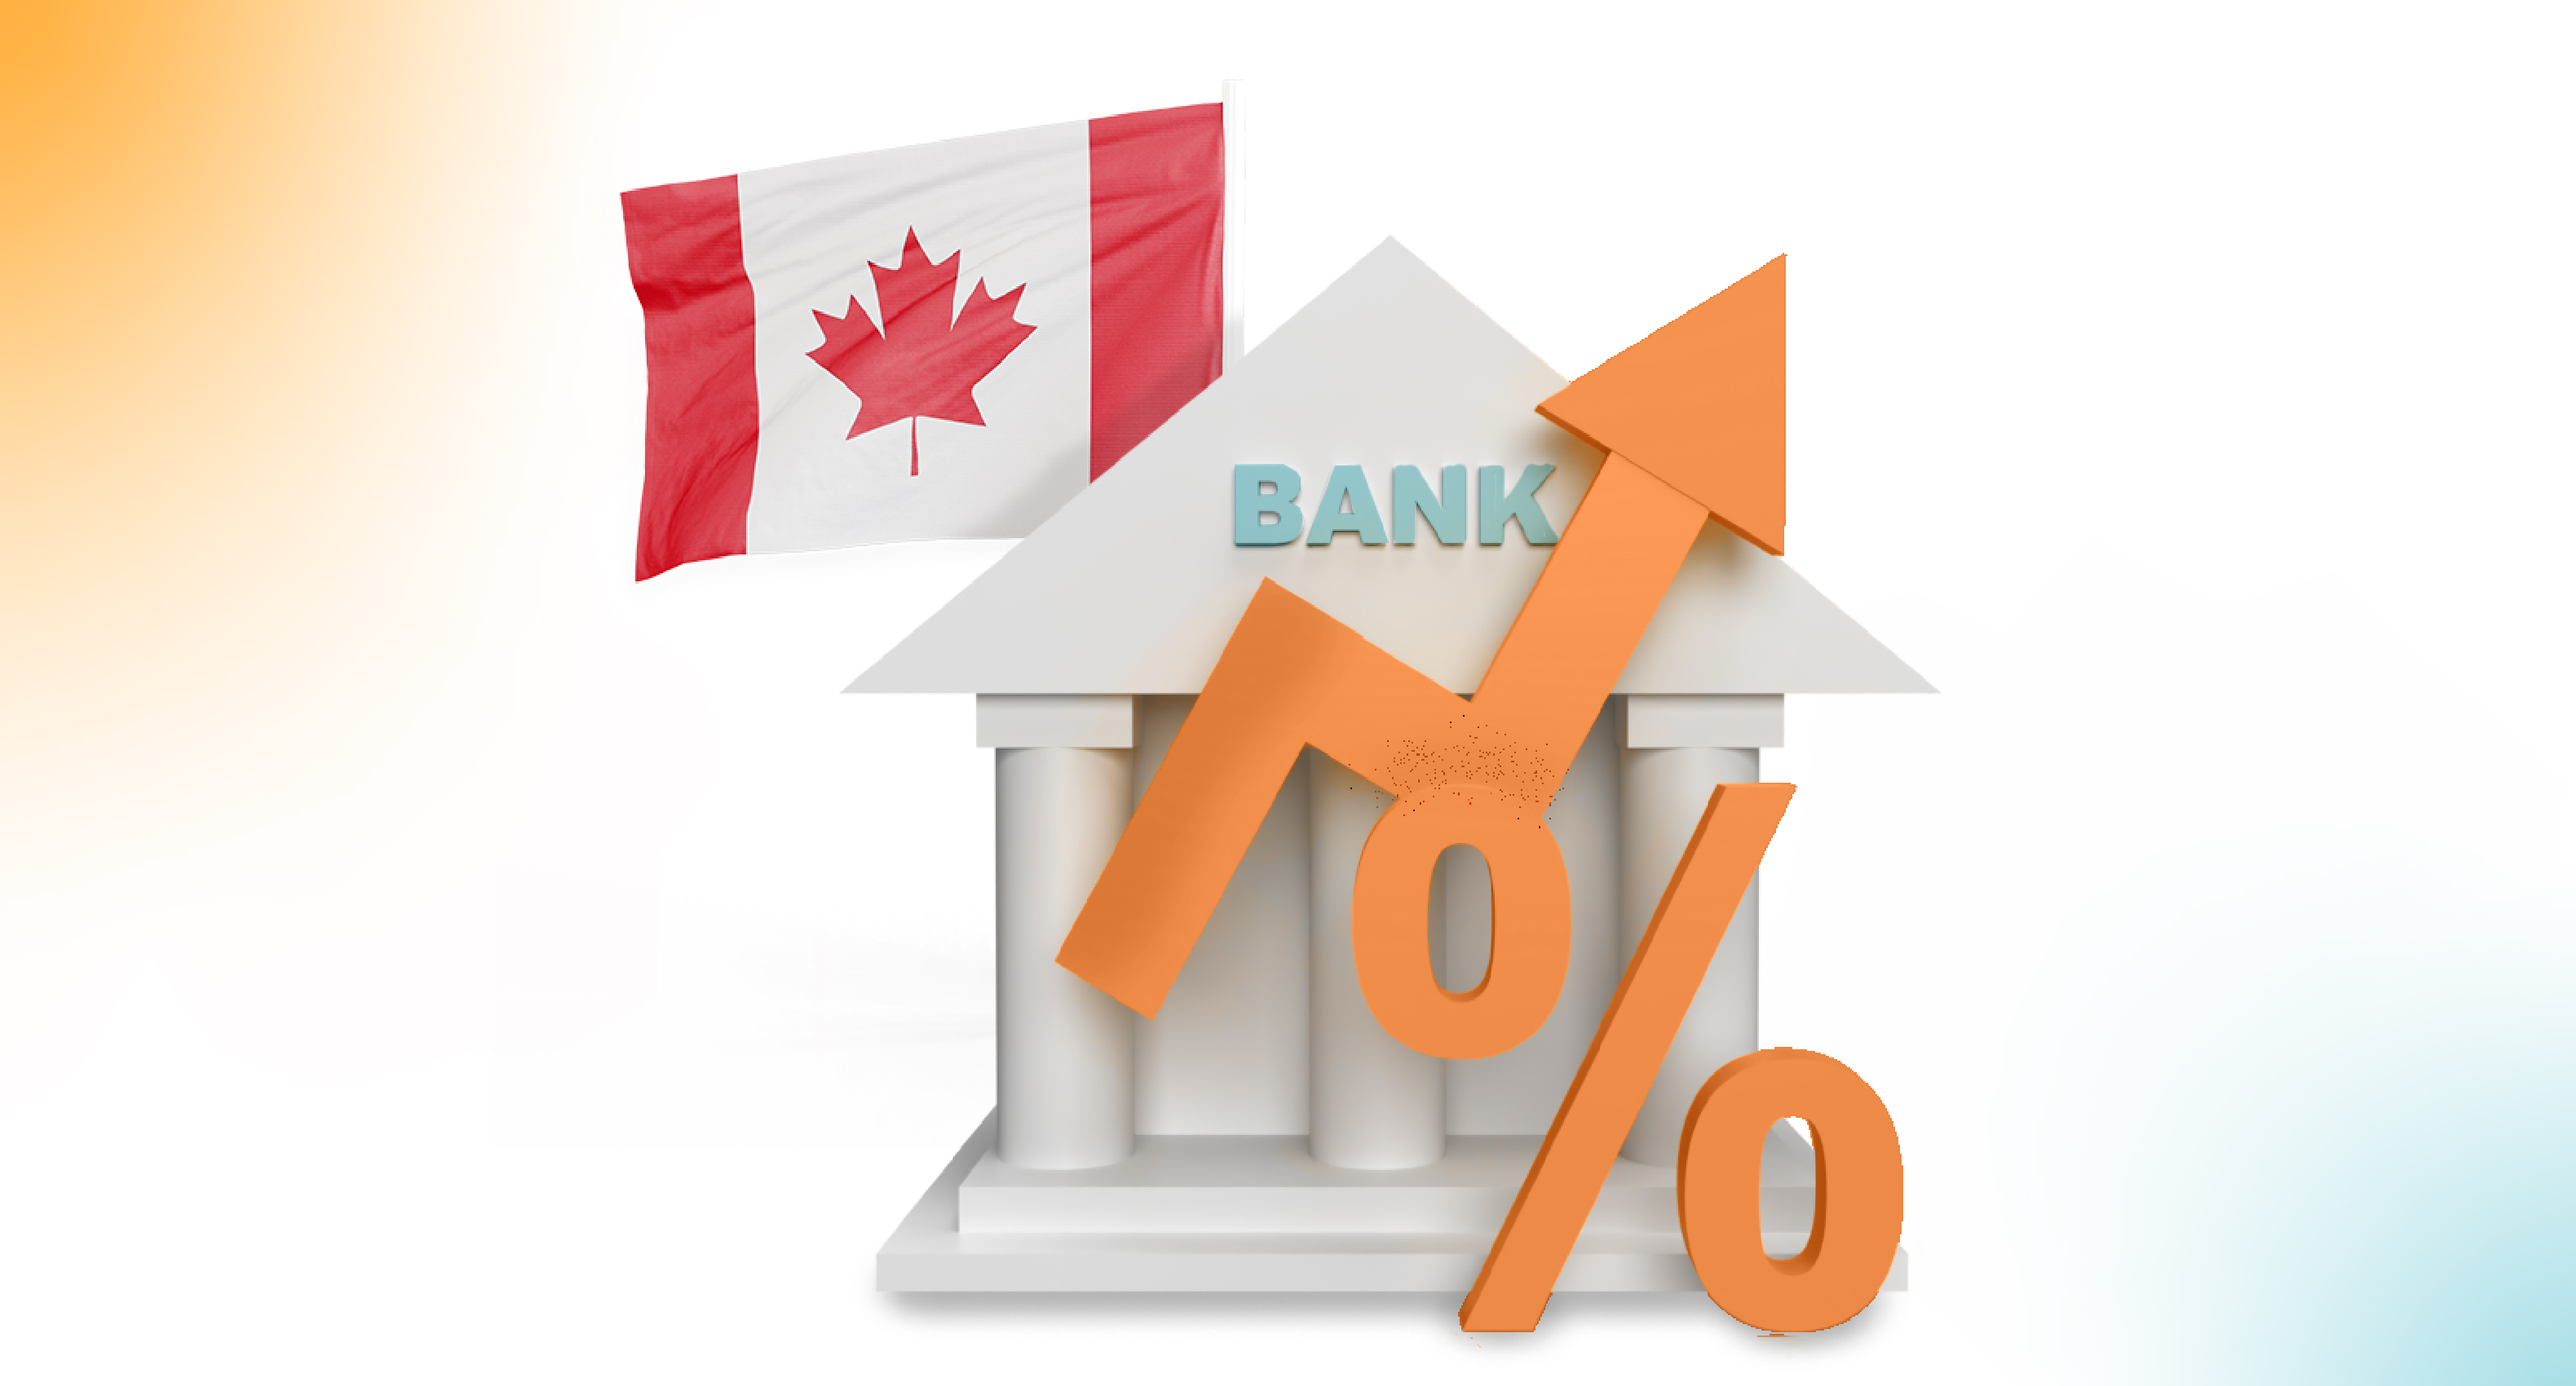 تصمیم بانک مرکزی کانادا (BoC) در خصوص نرخ بهره